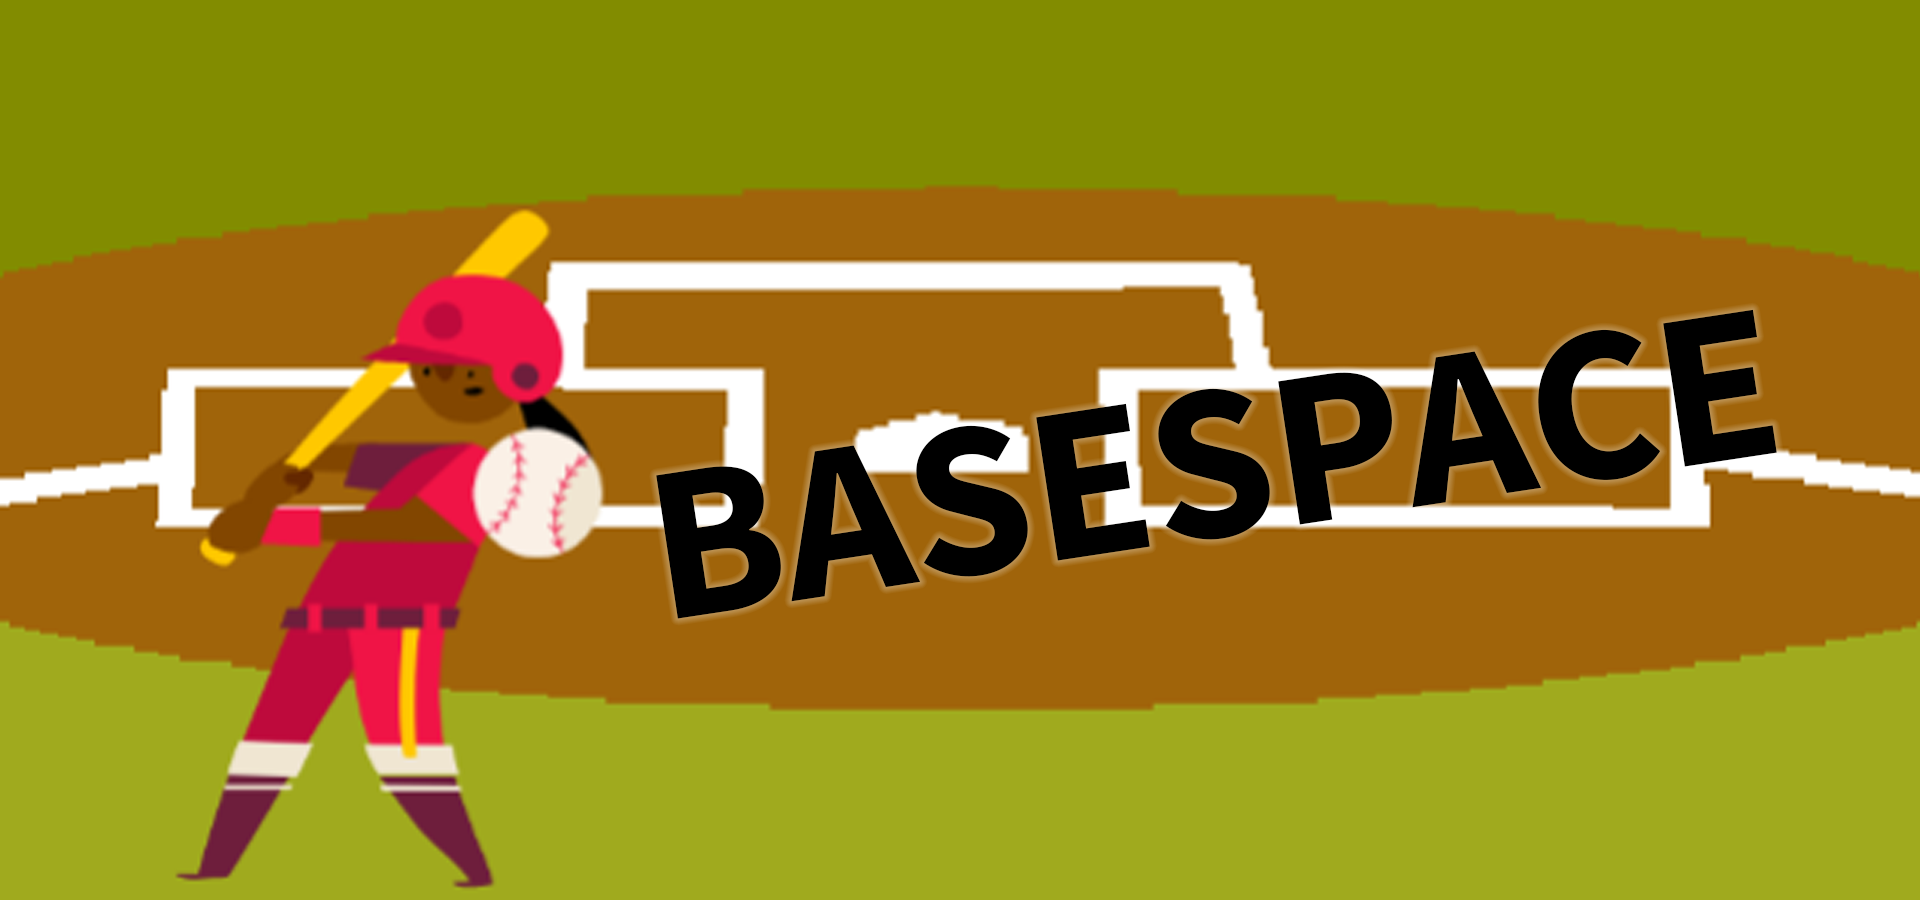 Basepace